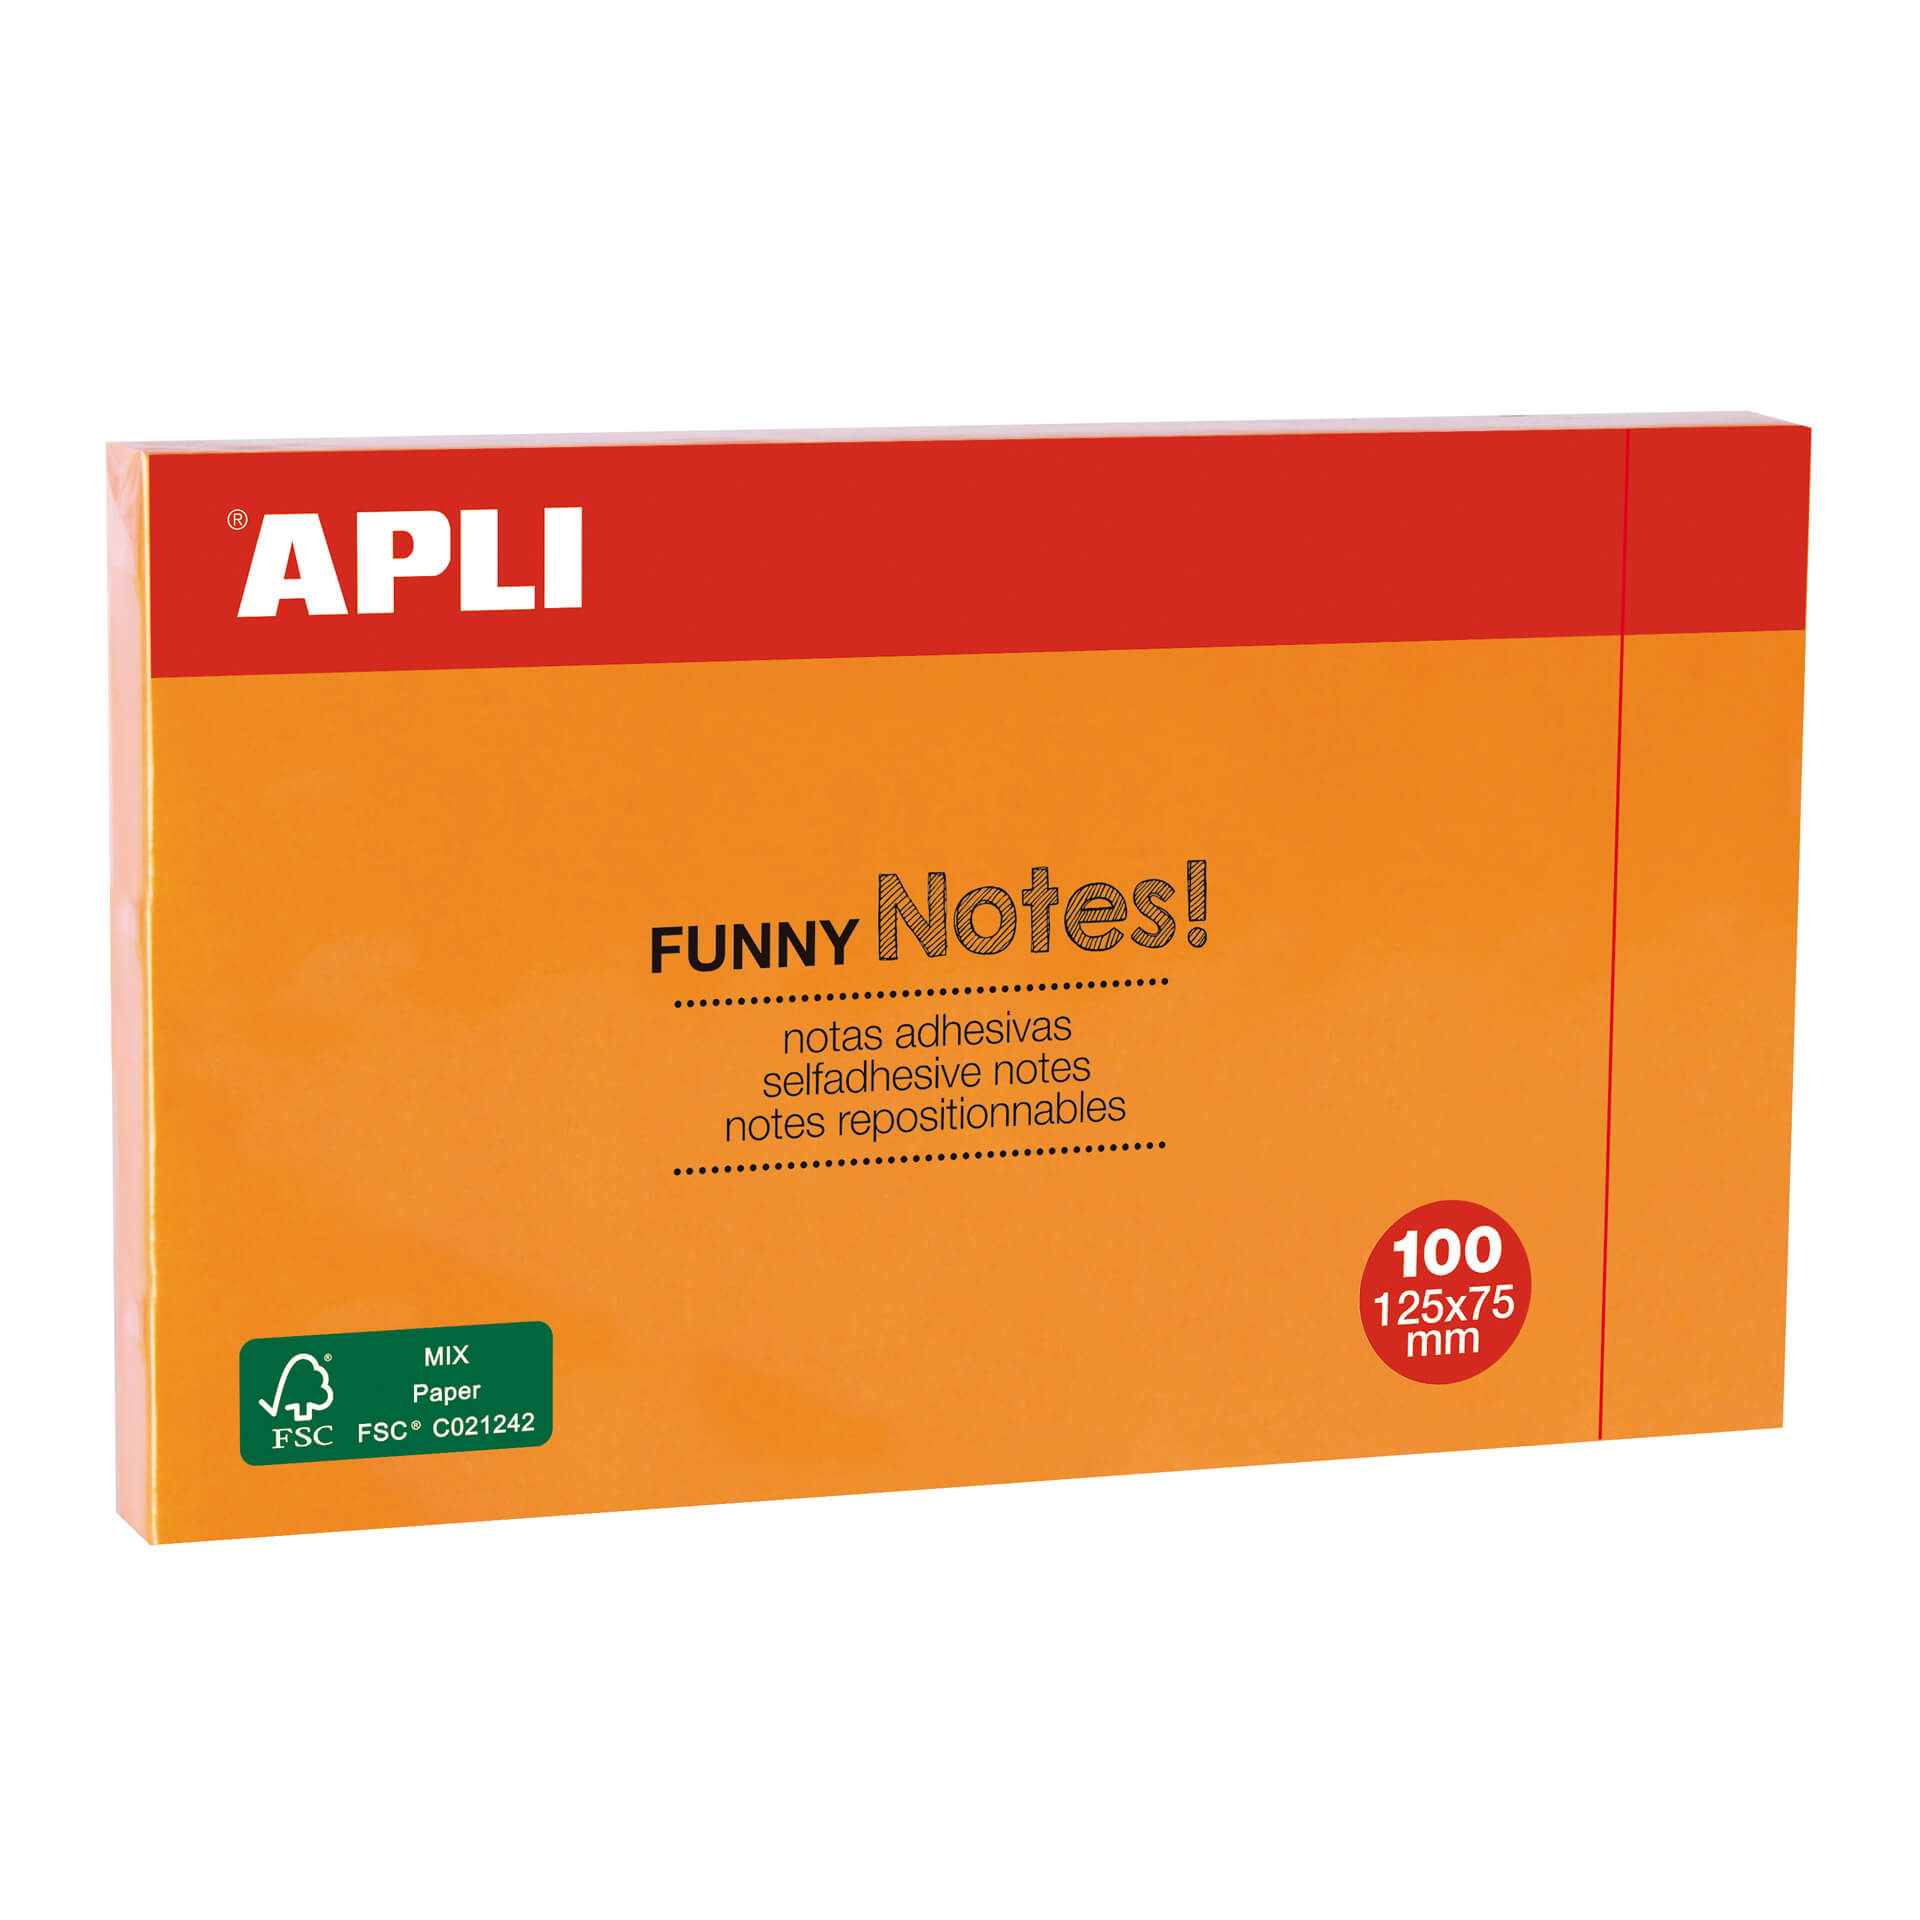 Apli Funny Sticky Notes 125x75mm - Bloc de 100 Feuilles - Adhésif de Qualité - Couleur Orange Fluo